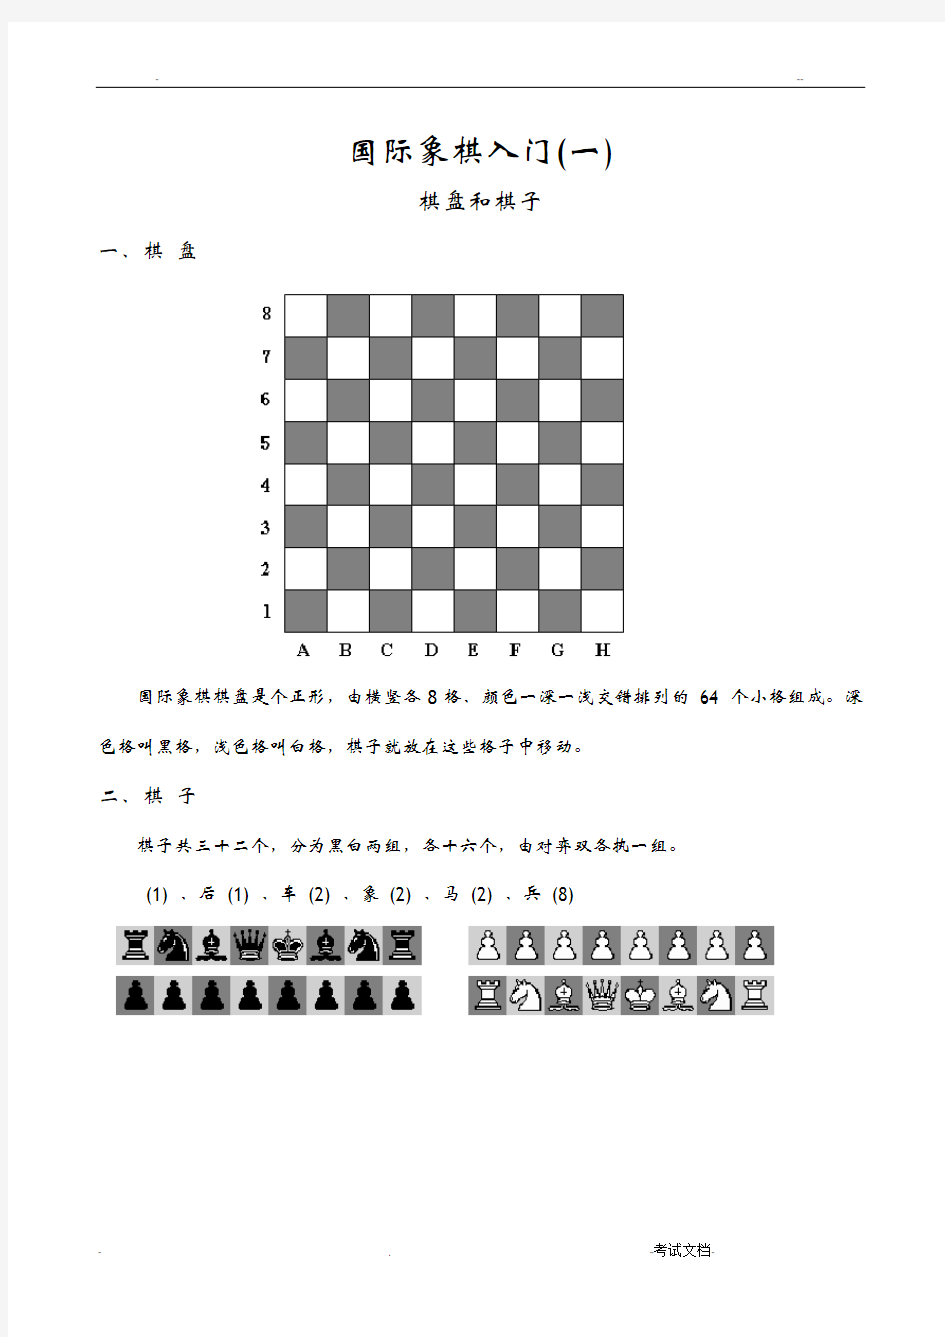 基础教程国际象棋入门学习